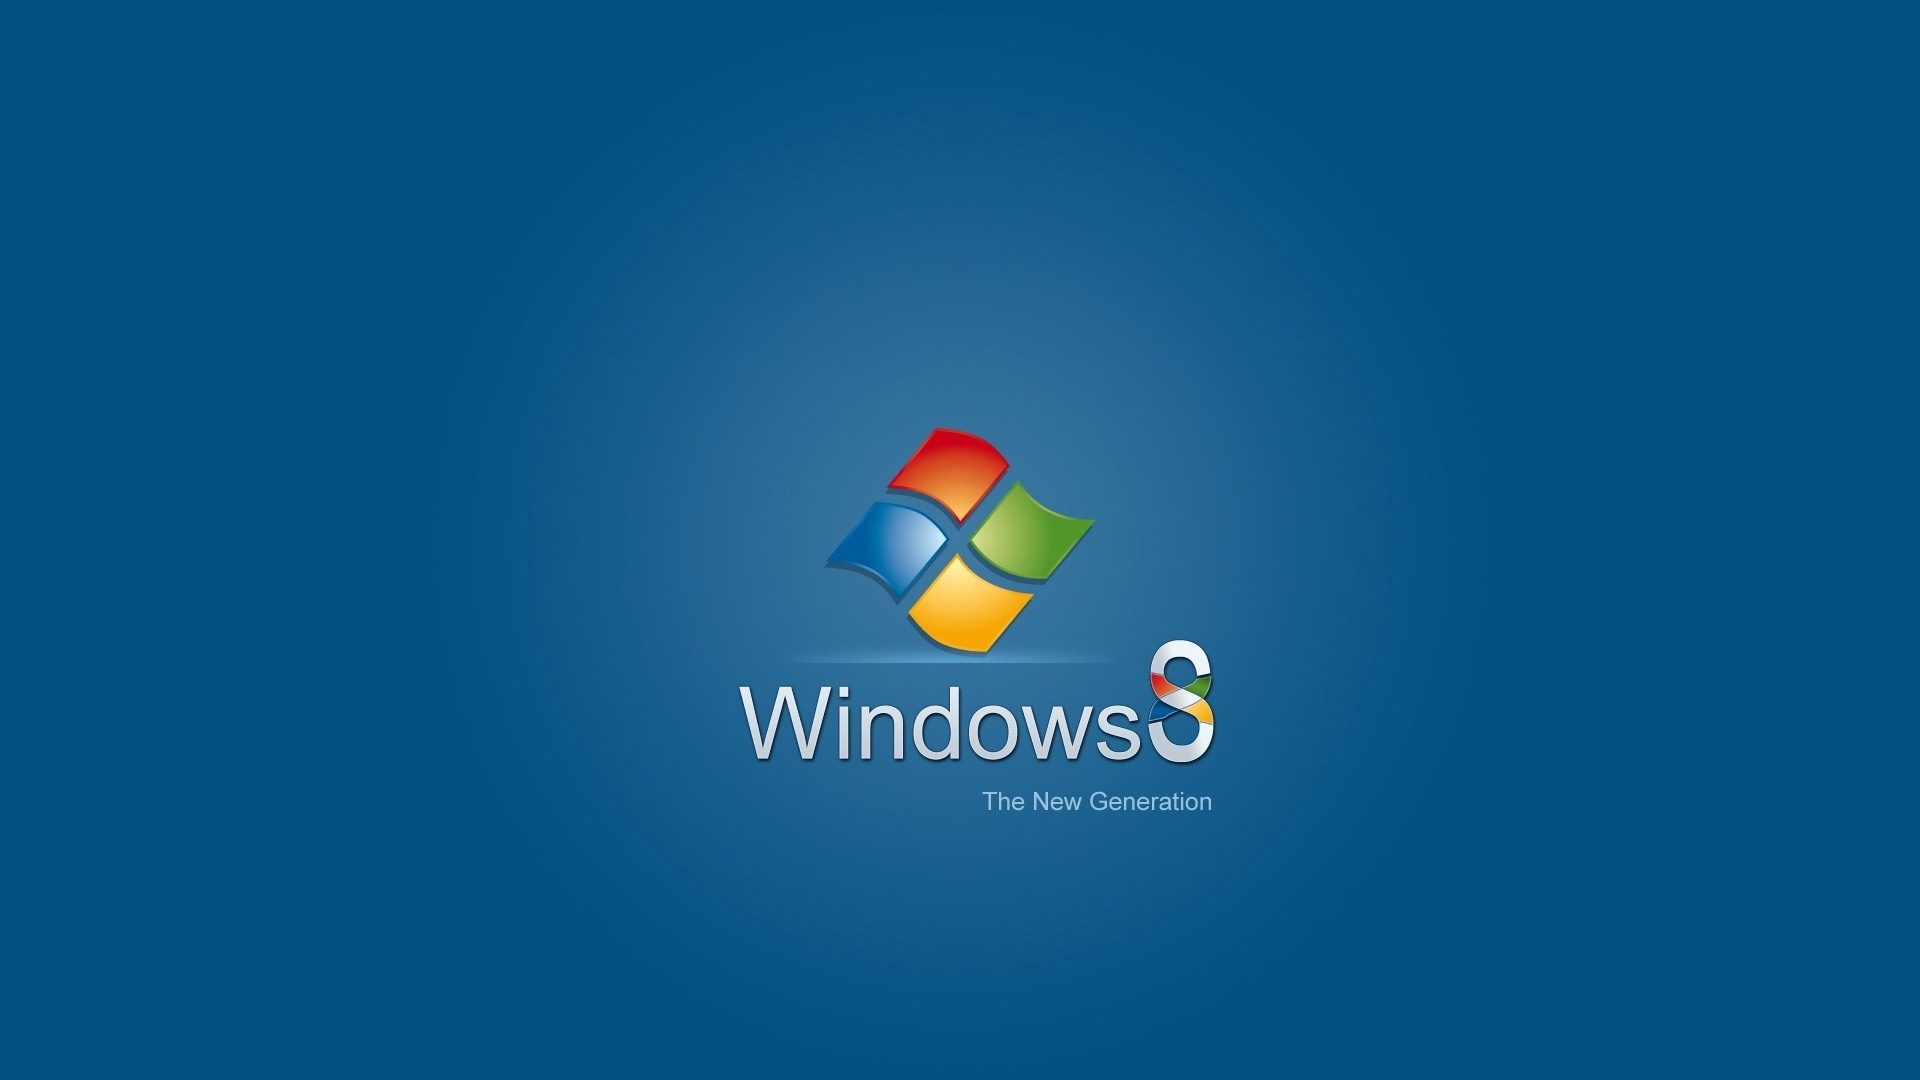 Windows 8 Theme Wallpaper (2) #2 - 1920x1080